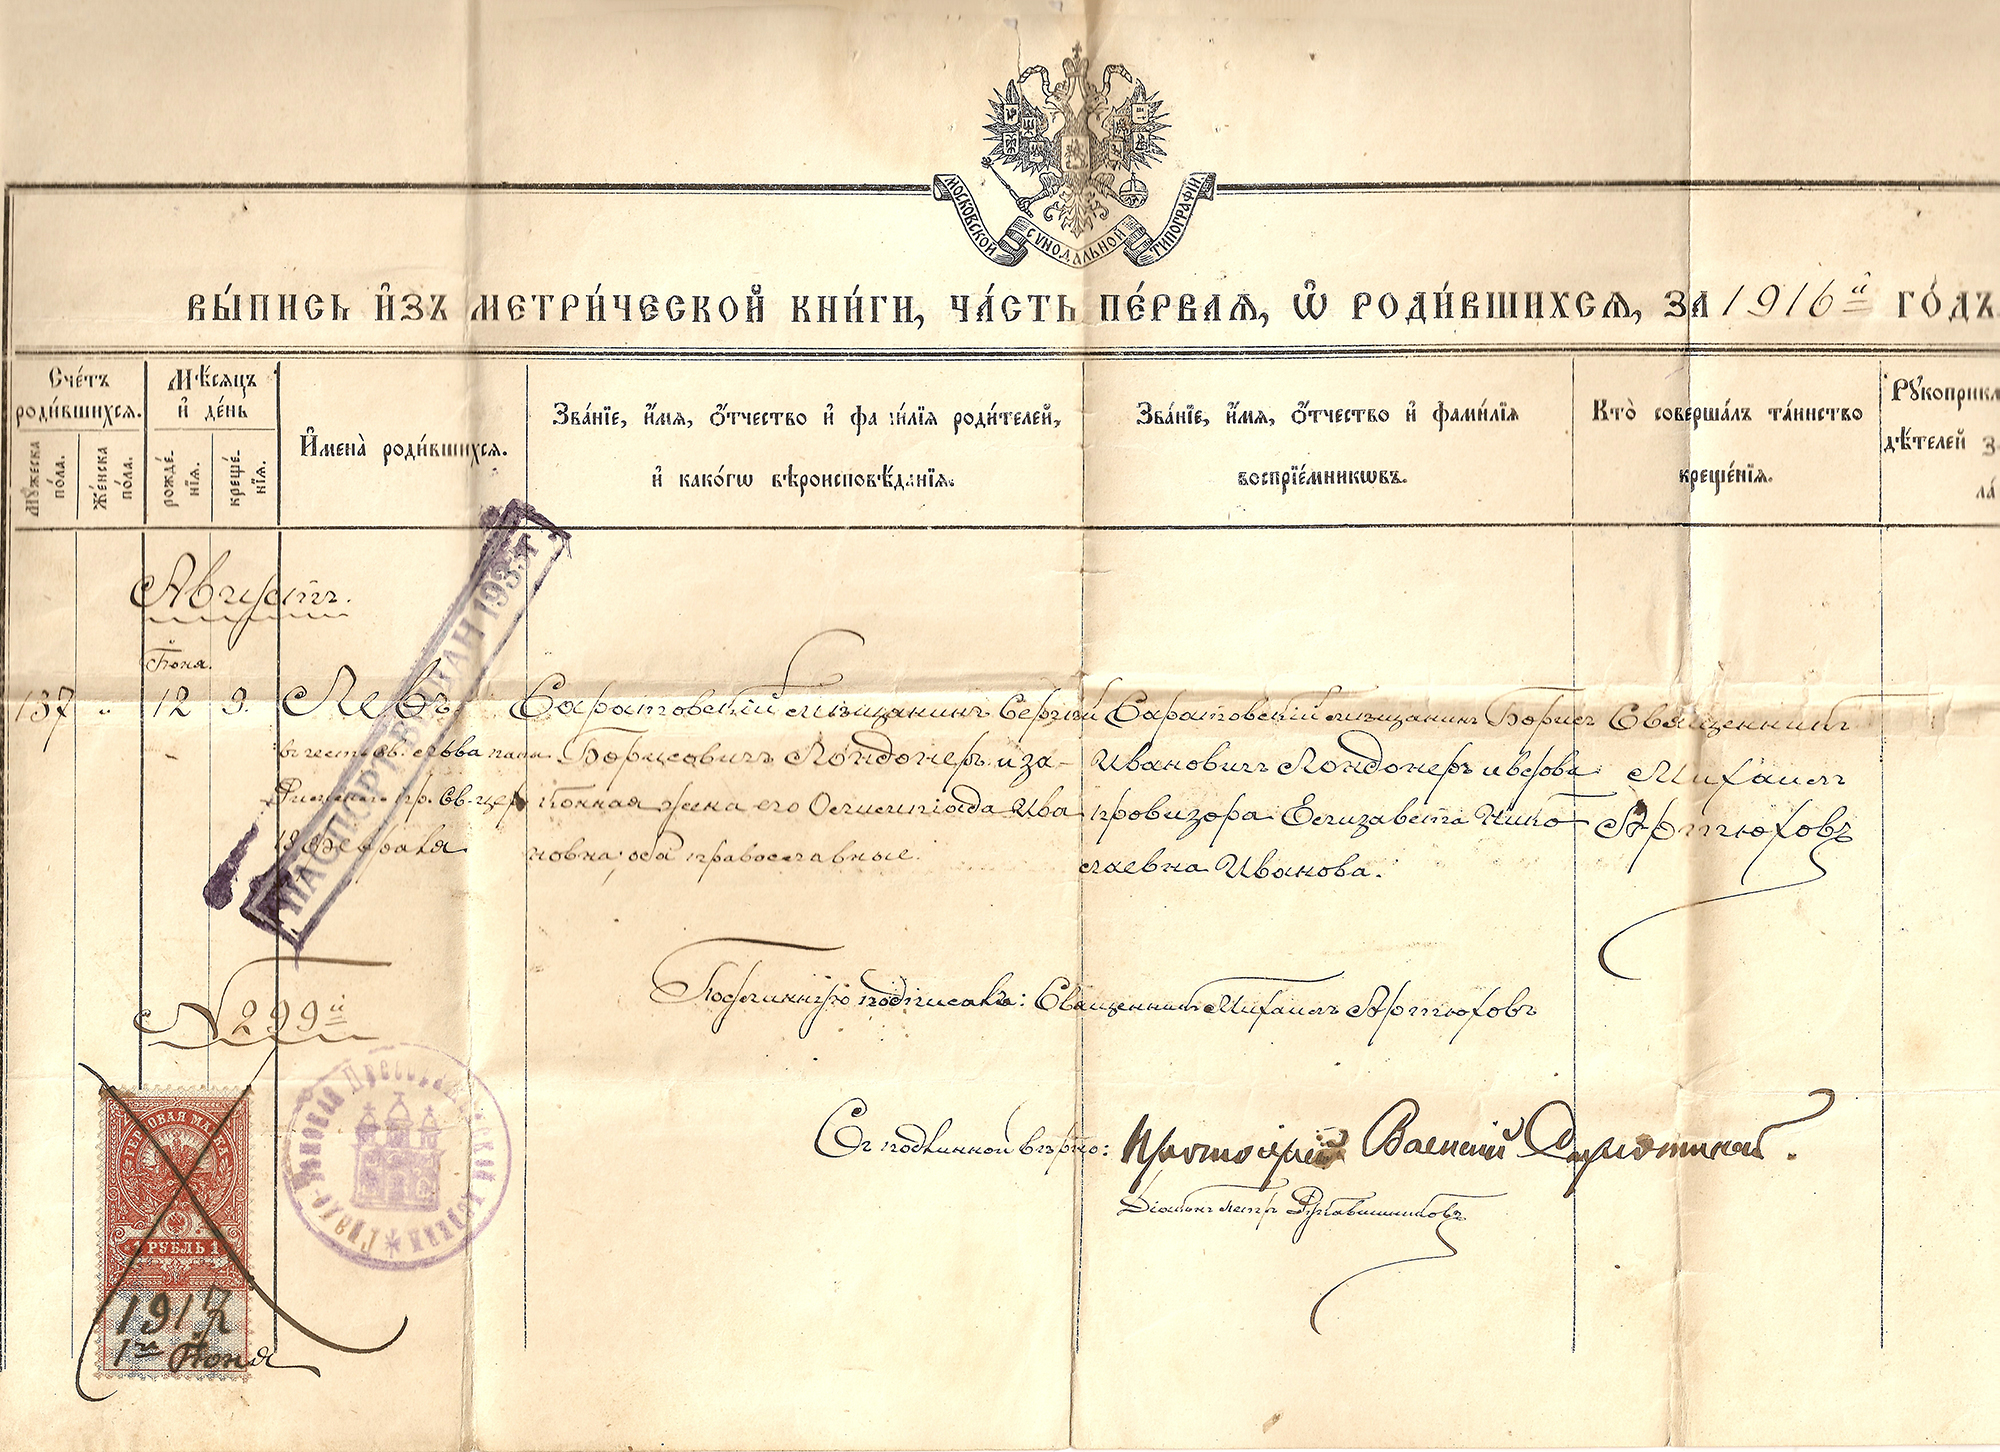 Паспорт ЛОНДОНЕРА, дата выдачи: 1916 год, Российская империя.